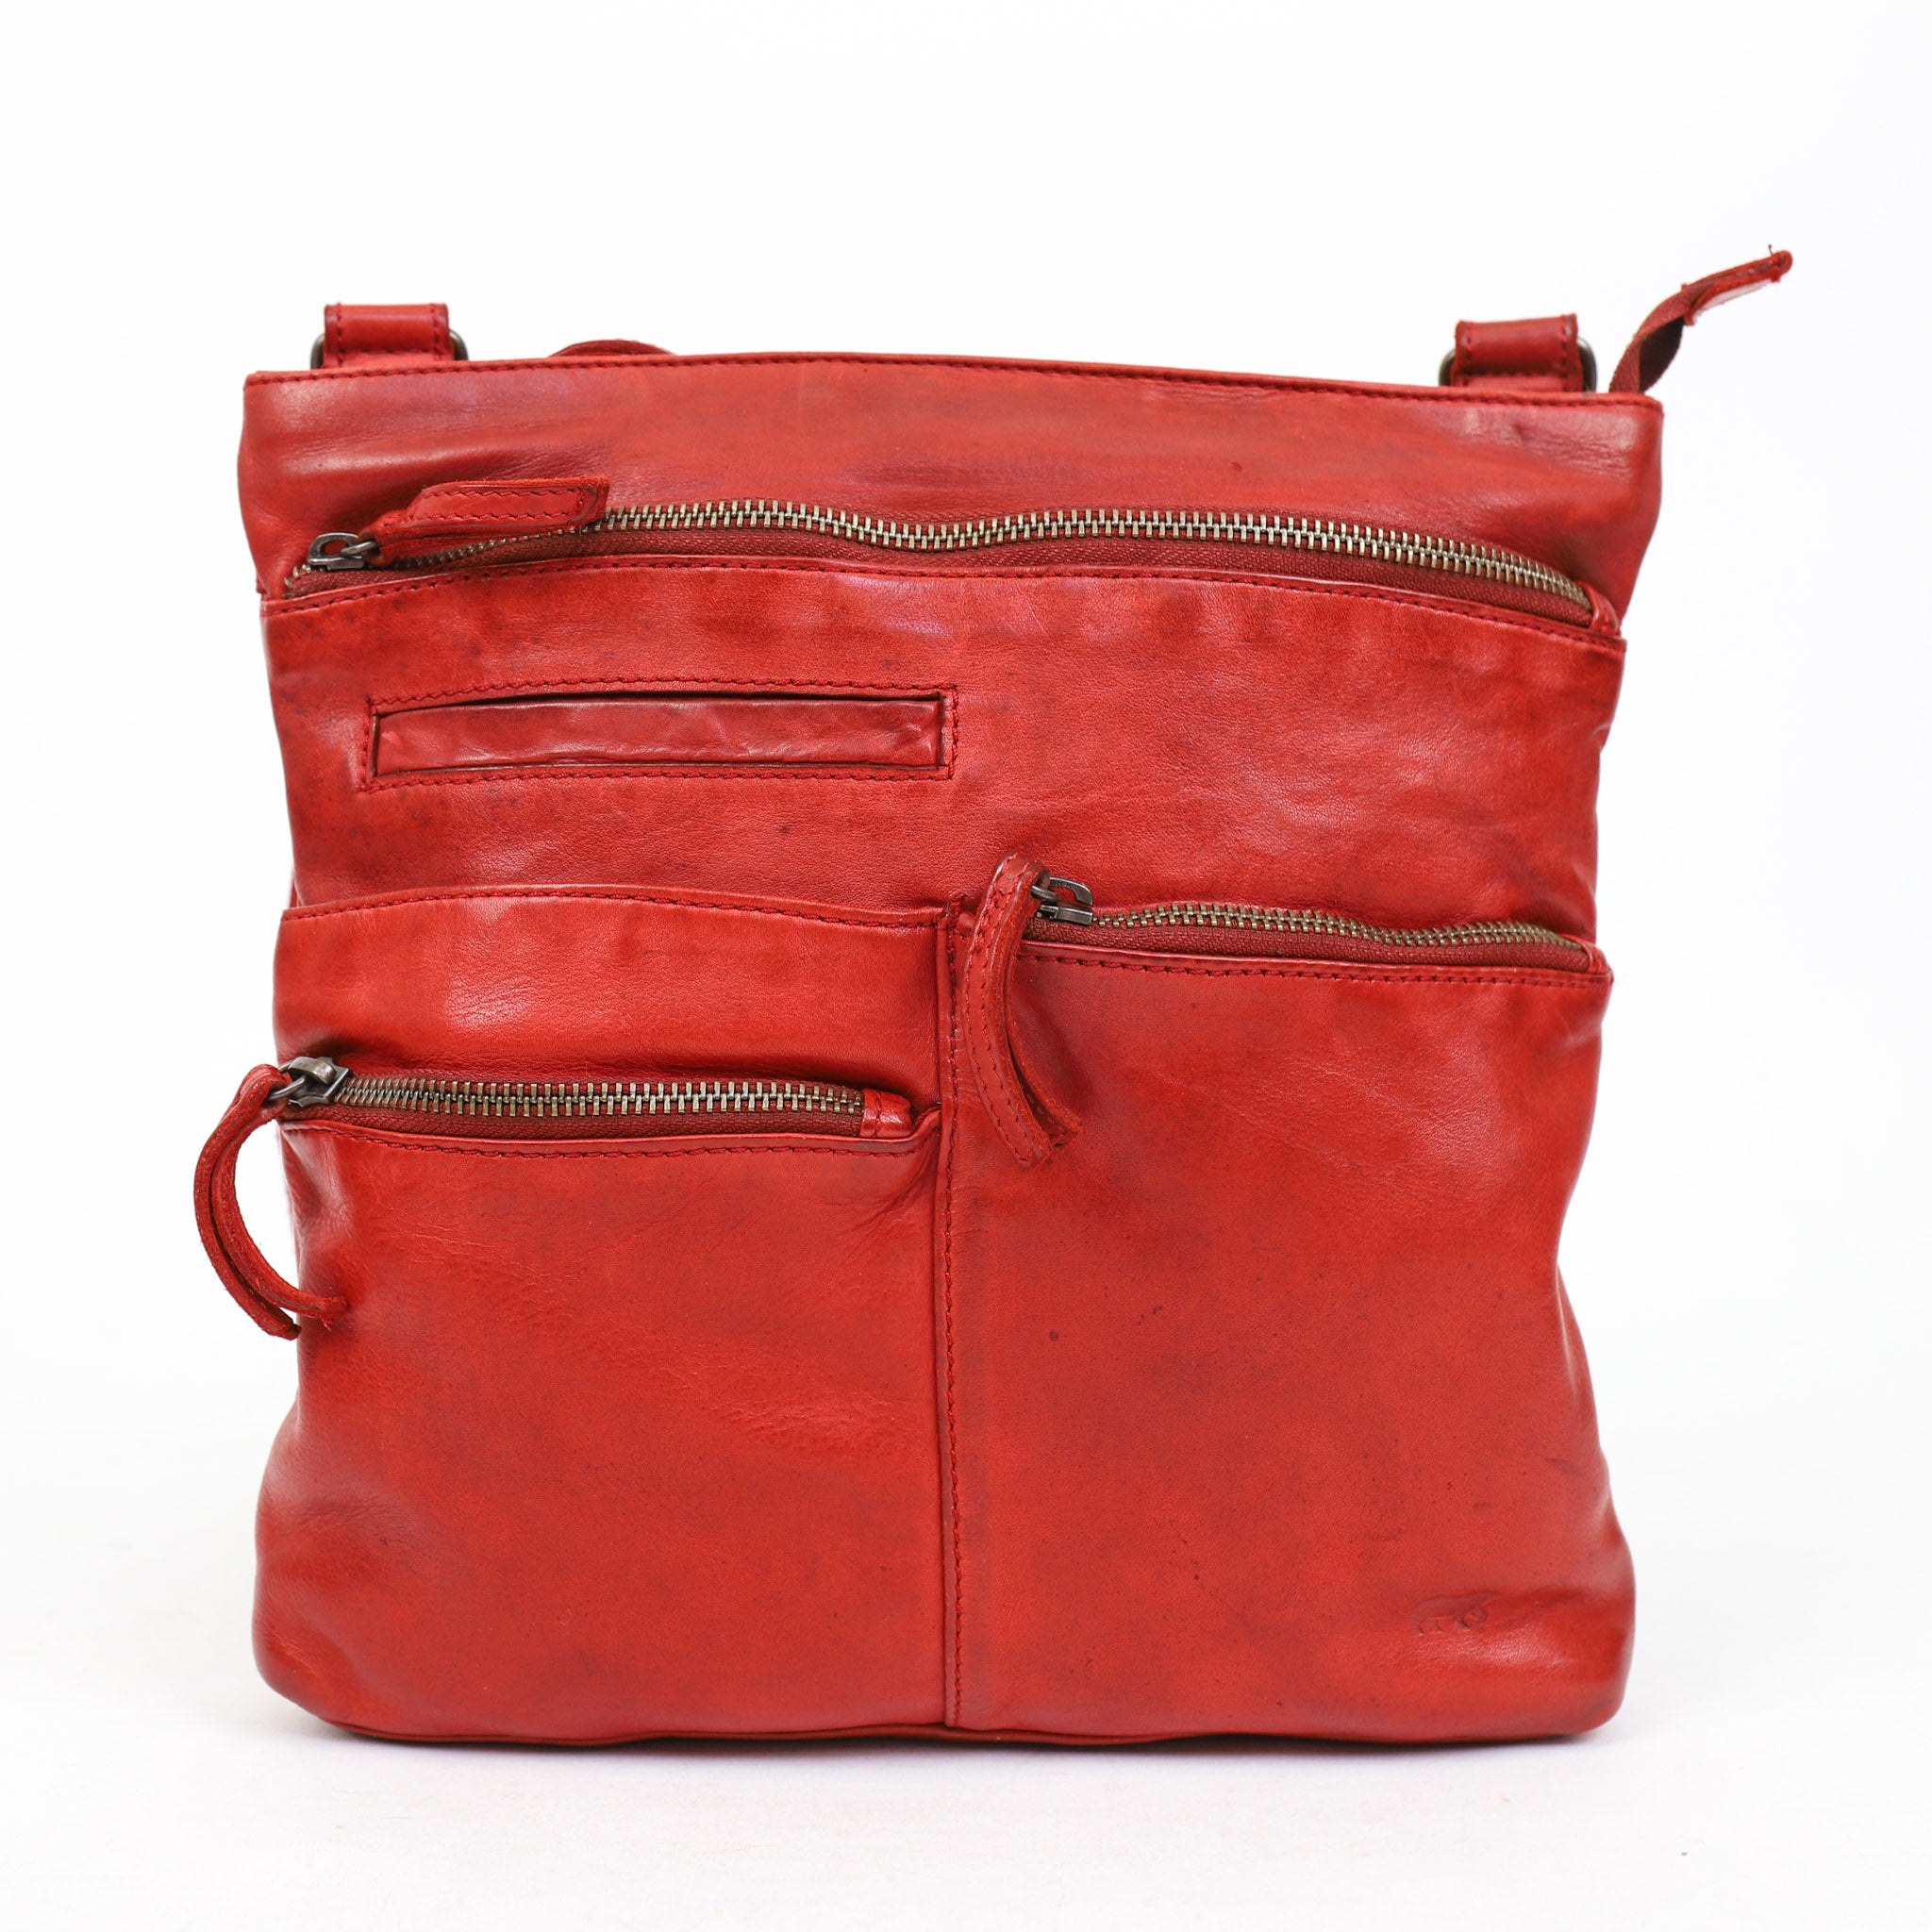 Shoulder bag 'Yara' red - CL 40523